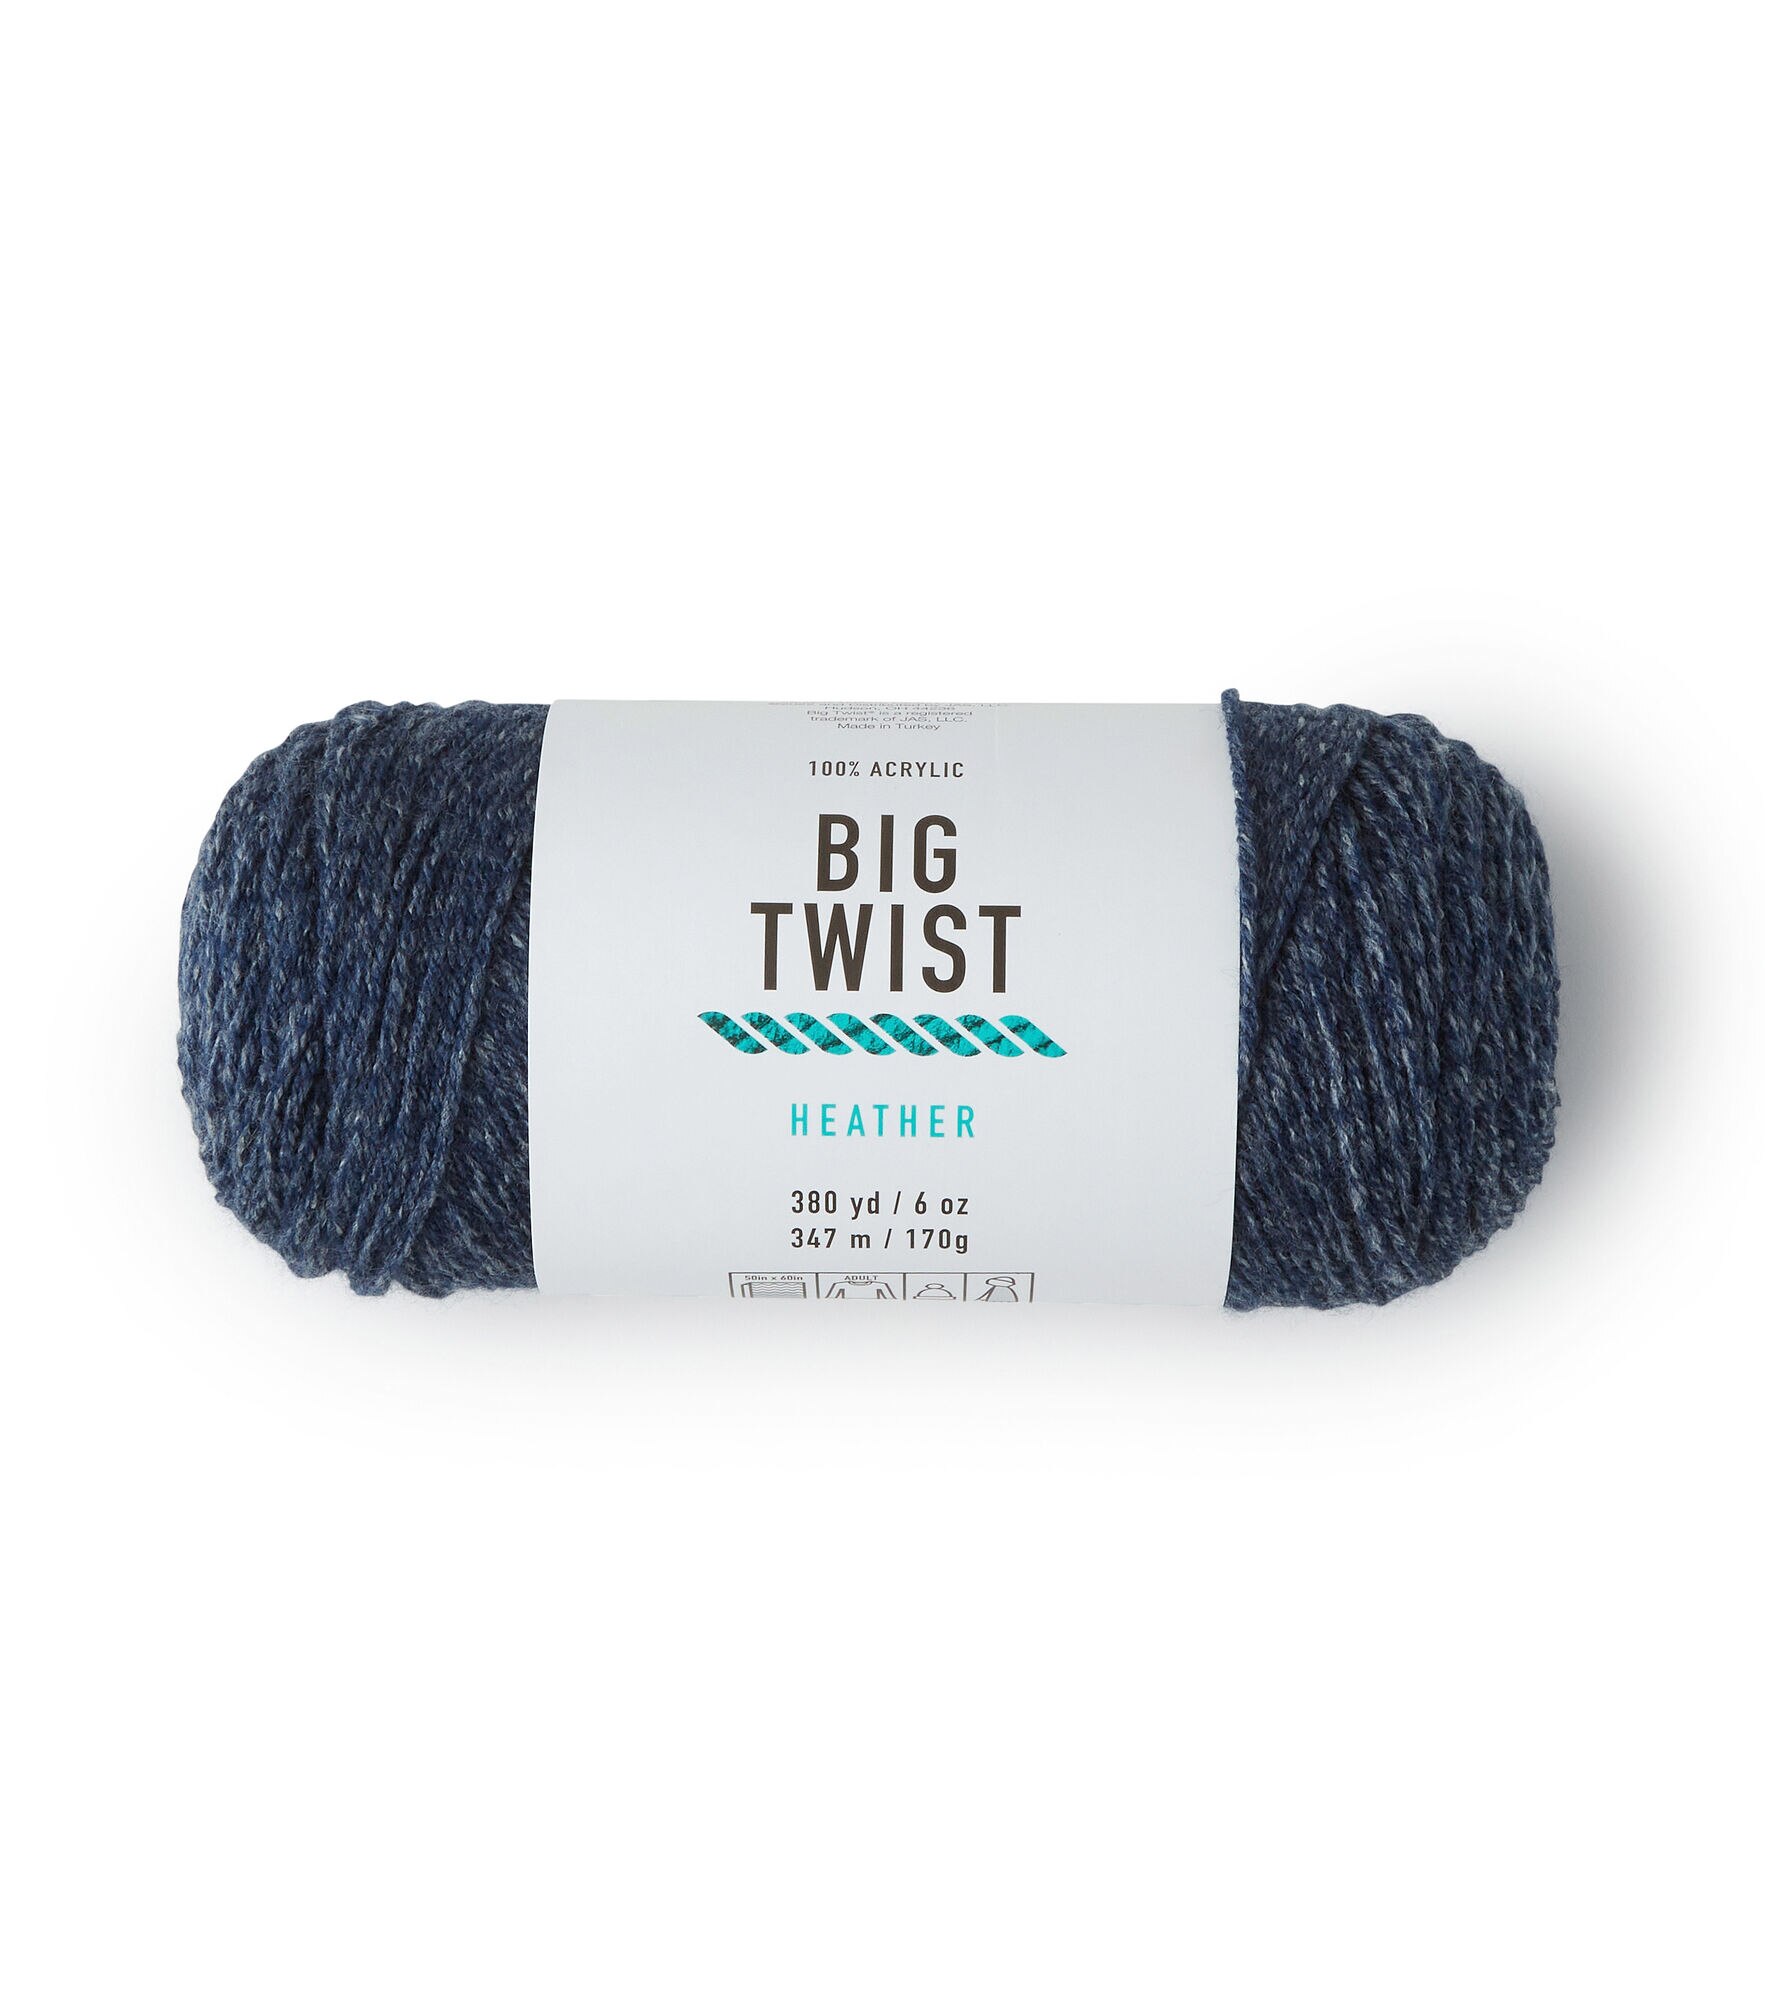 Big Twist 2oz Medium Weight Cotton Blend 107yd Yarn - Underwater Stipple - Big Twist Yarn - Yarn & Needlecrafts